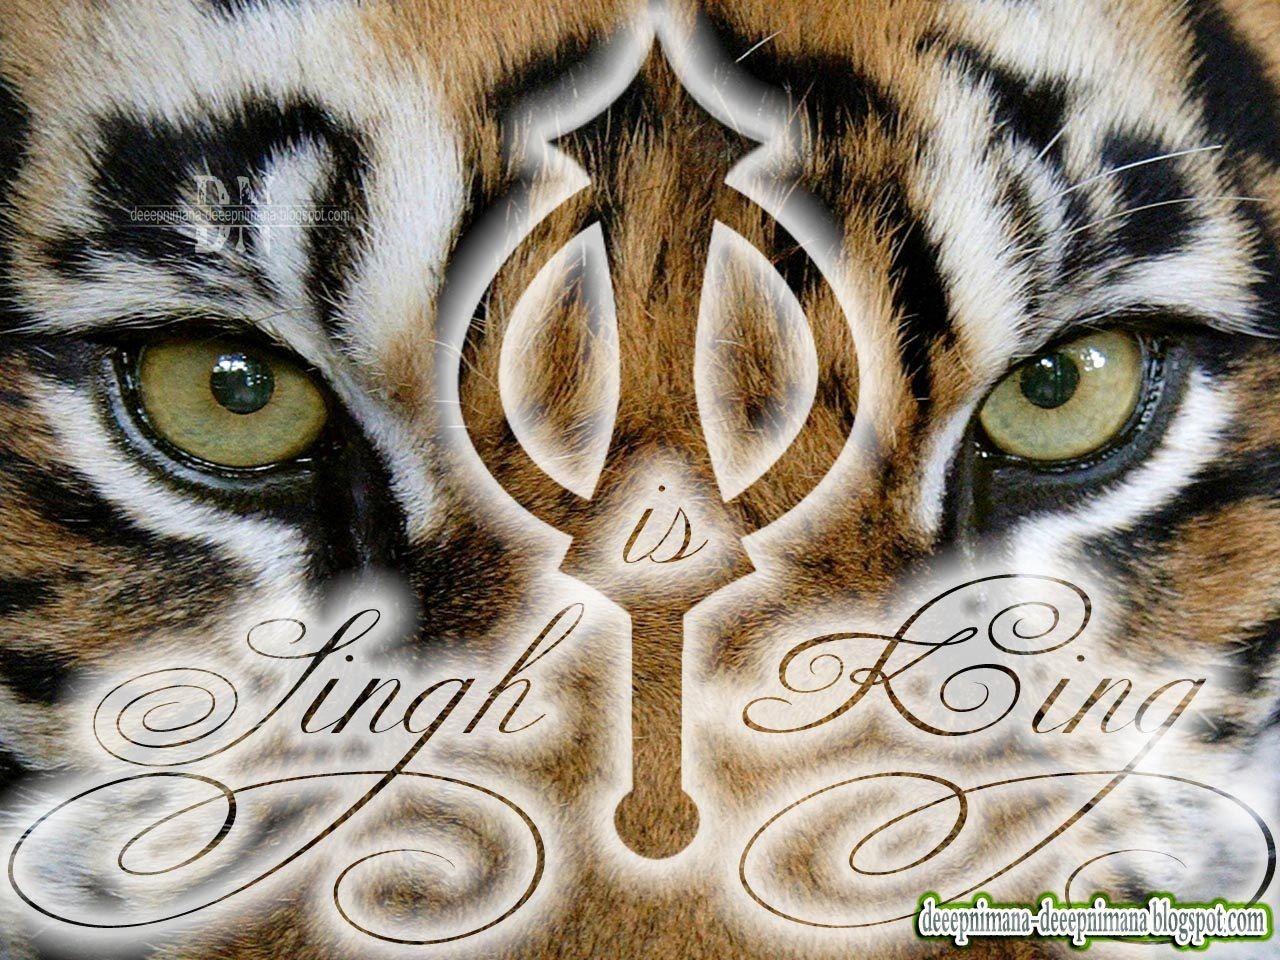 Deeepnimana Deeepnimana Blogspot.com: Singh Is King